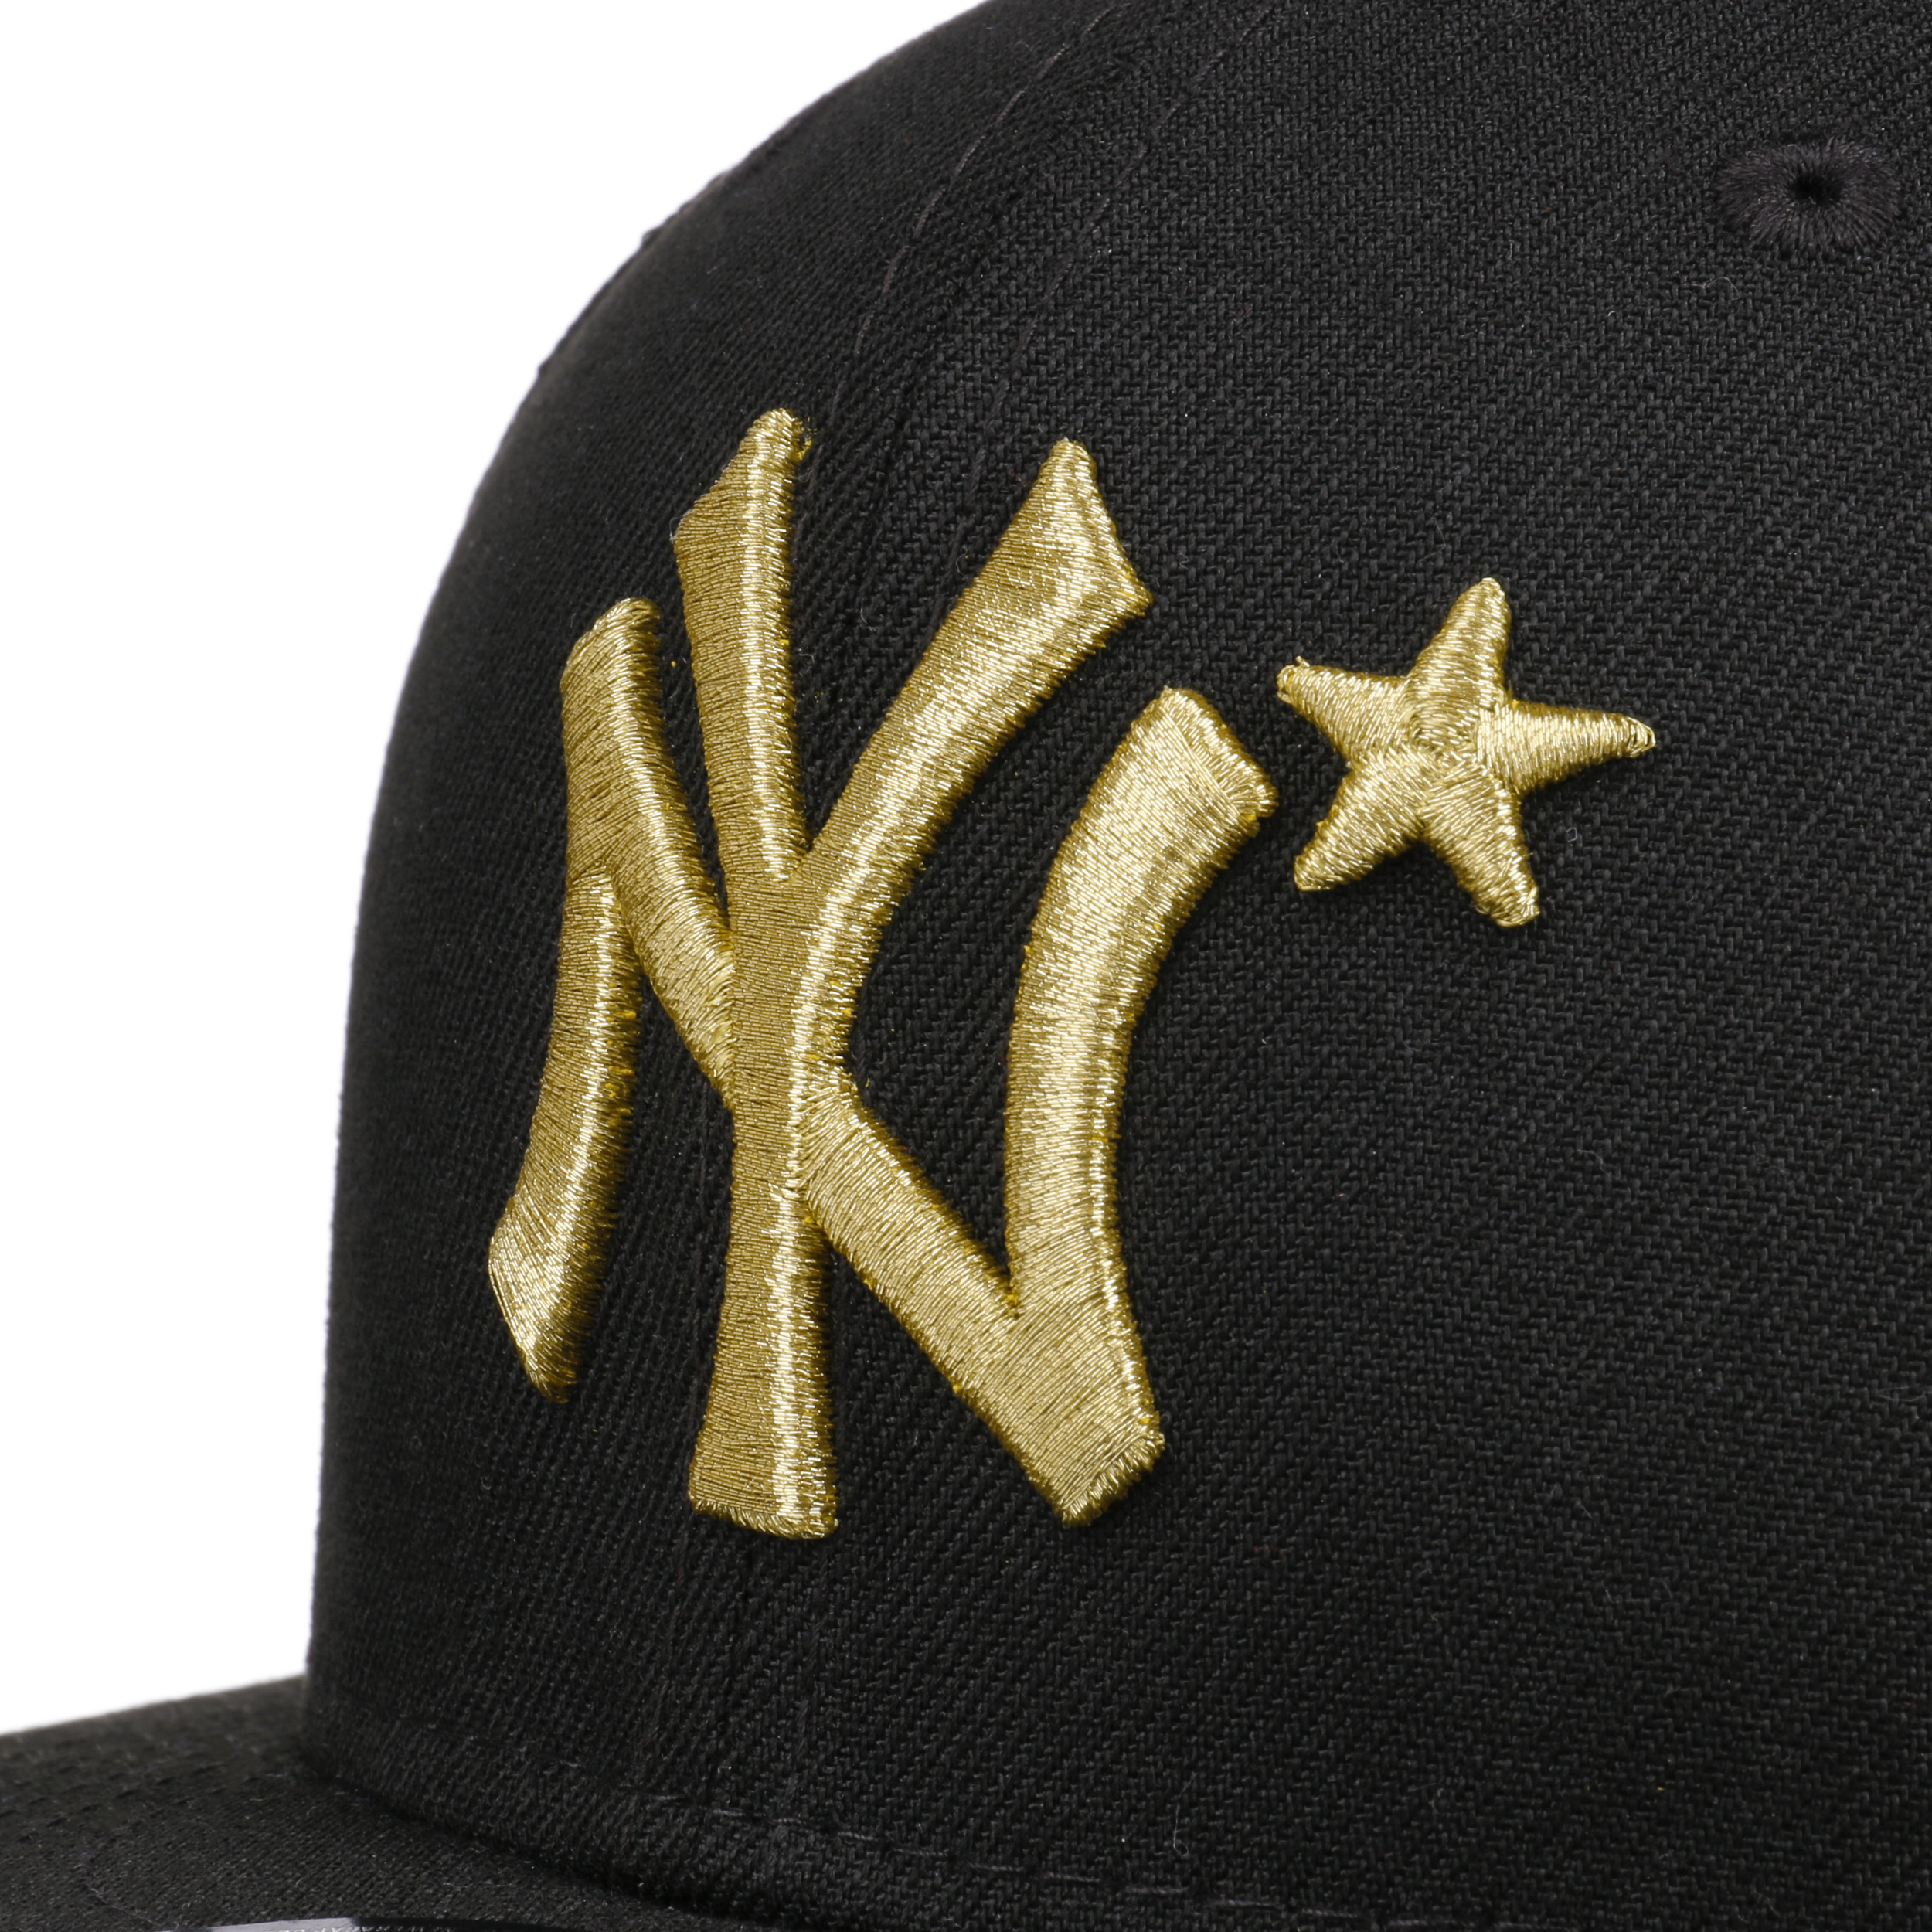 9Fifty NY Yankees Allstar Cap by New Era